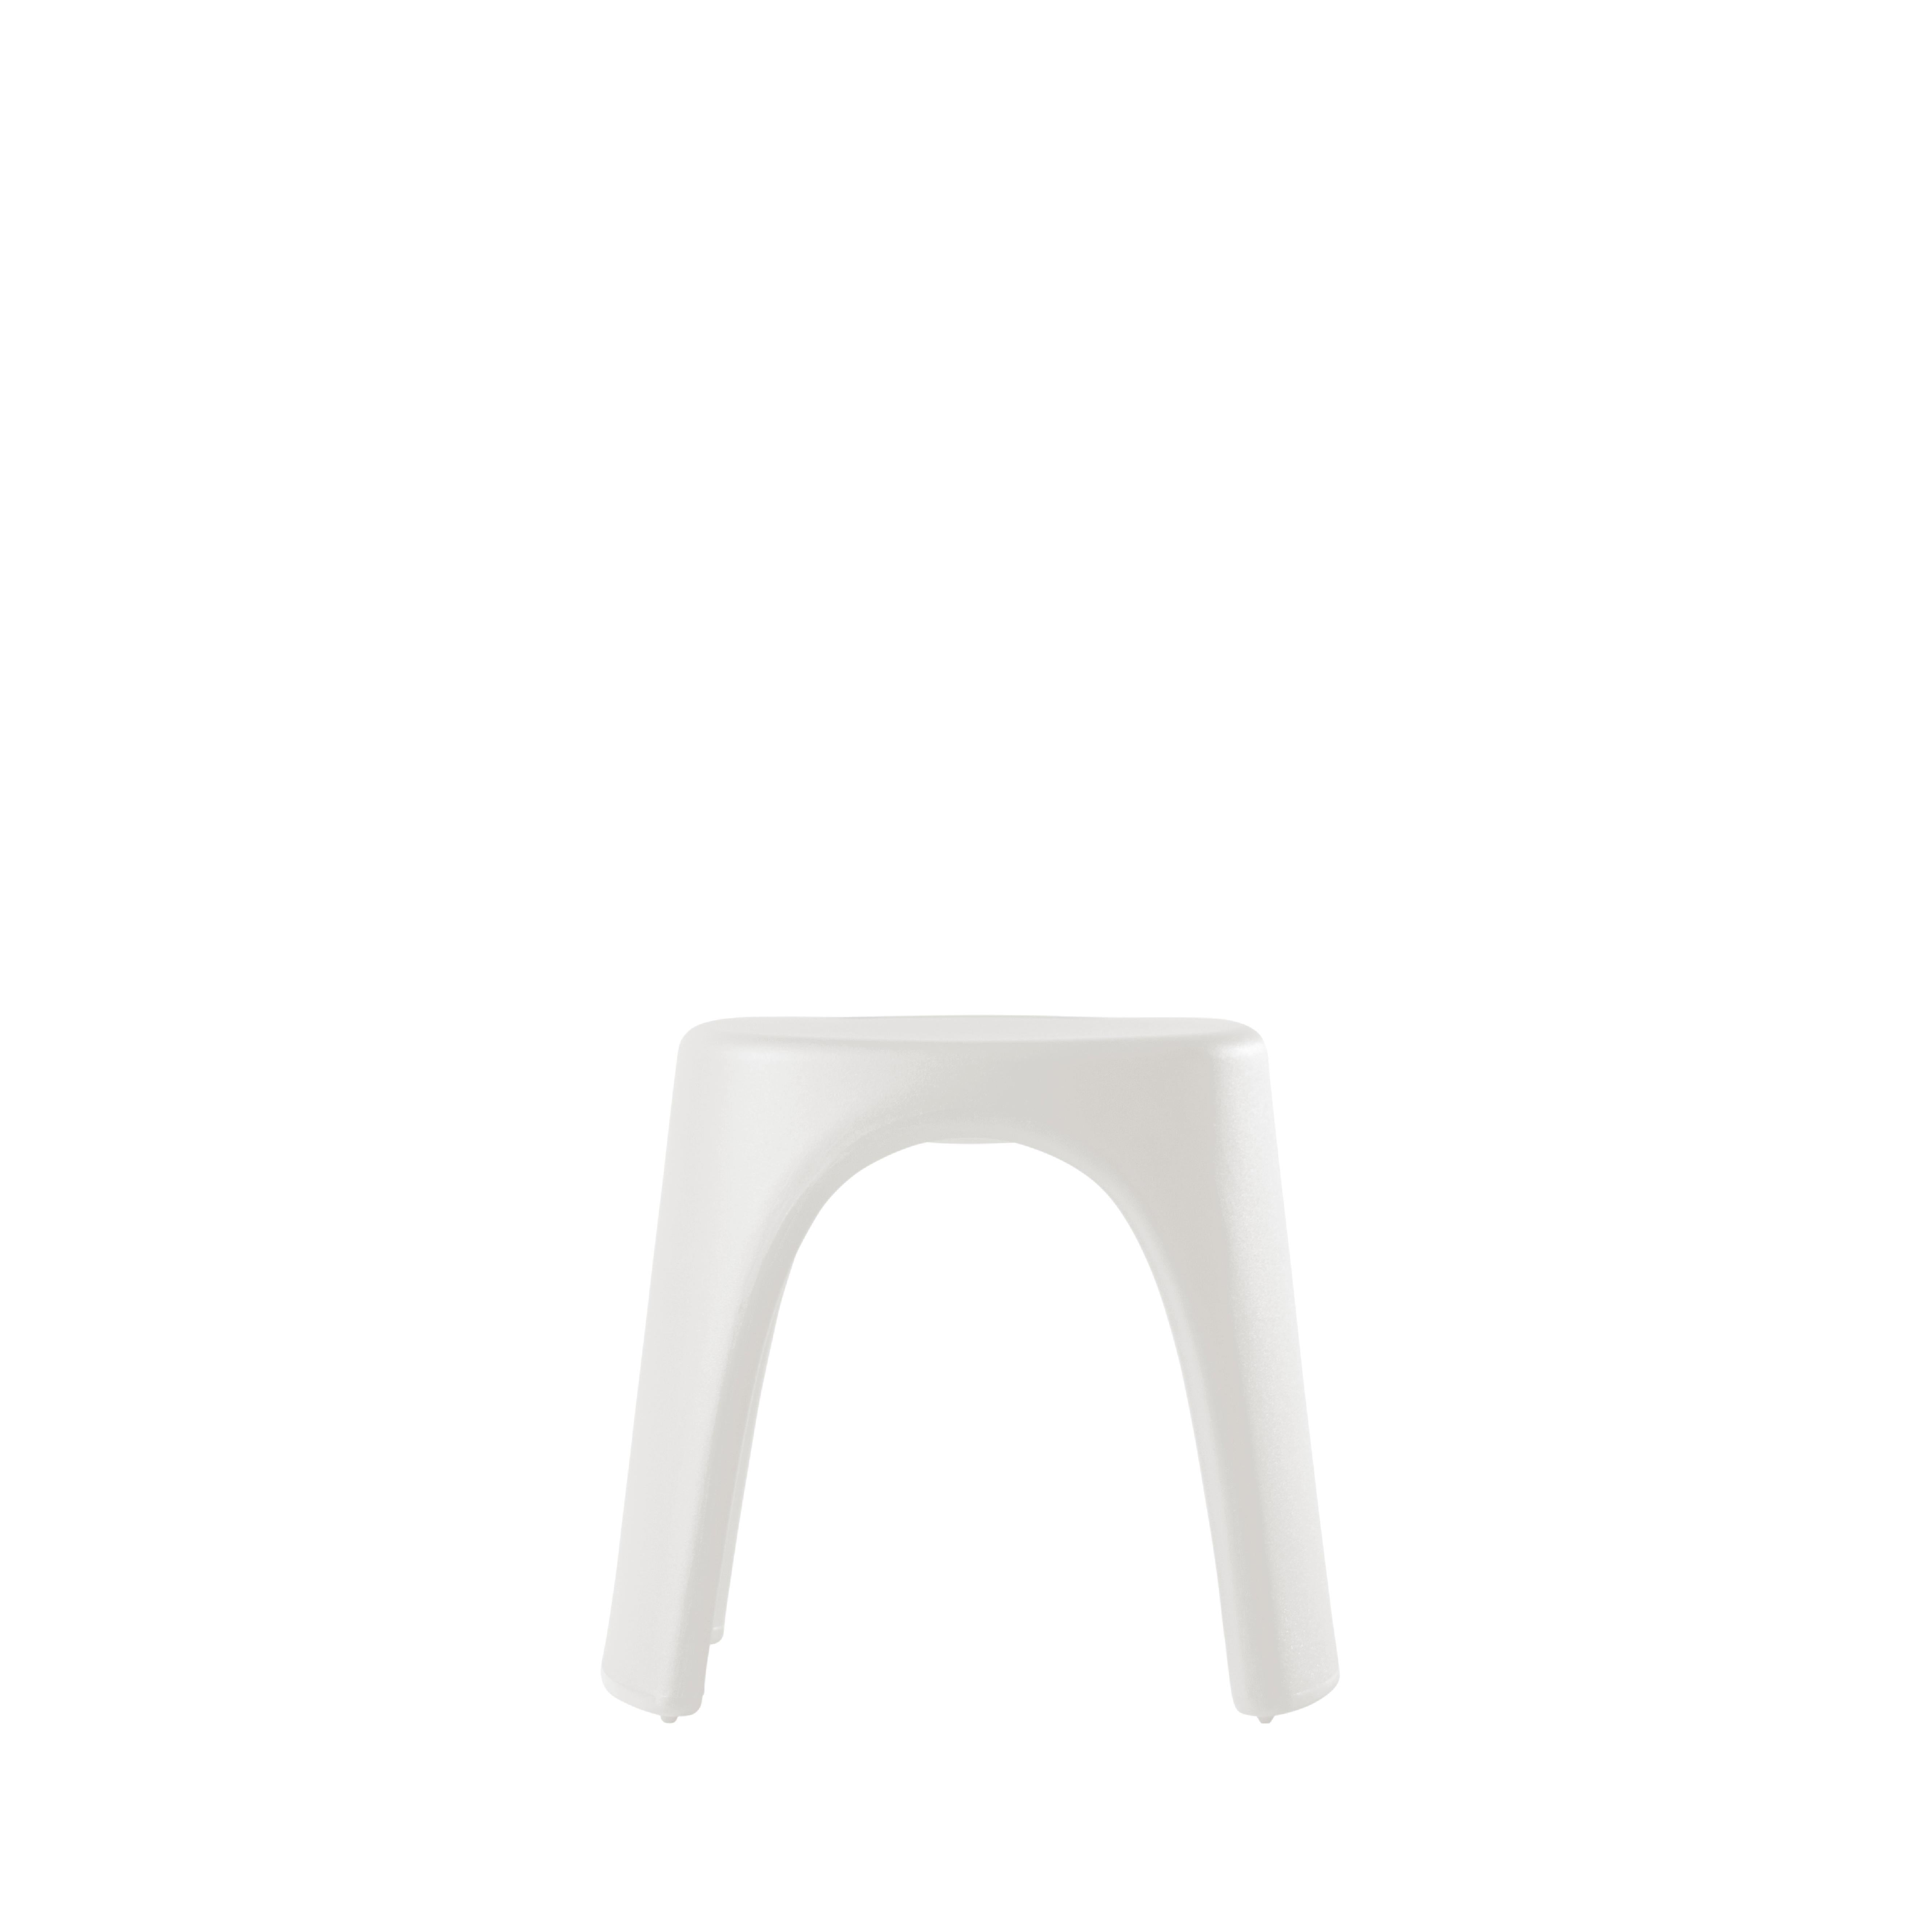 Milchig-weißer Amélie Sgabello-Hocker von Italo Pertichini
Abmessungen: T 40 x B 46 x H 43 cm.
MATERIALEN: Polyethylen.
Gewicht: 4 kg.

Erhältlich in einer Standardversion und einer lackierten Version. Preise können abweichen. Erhältlich in